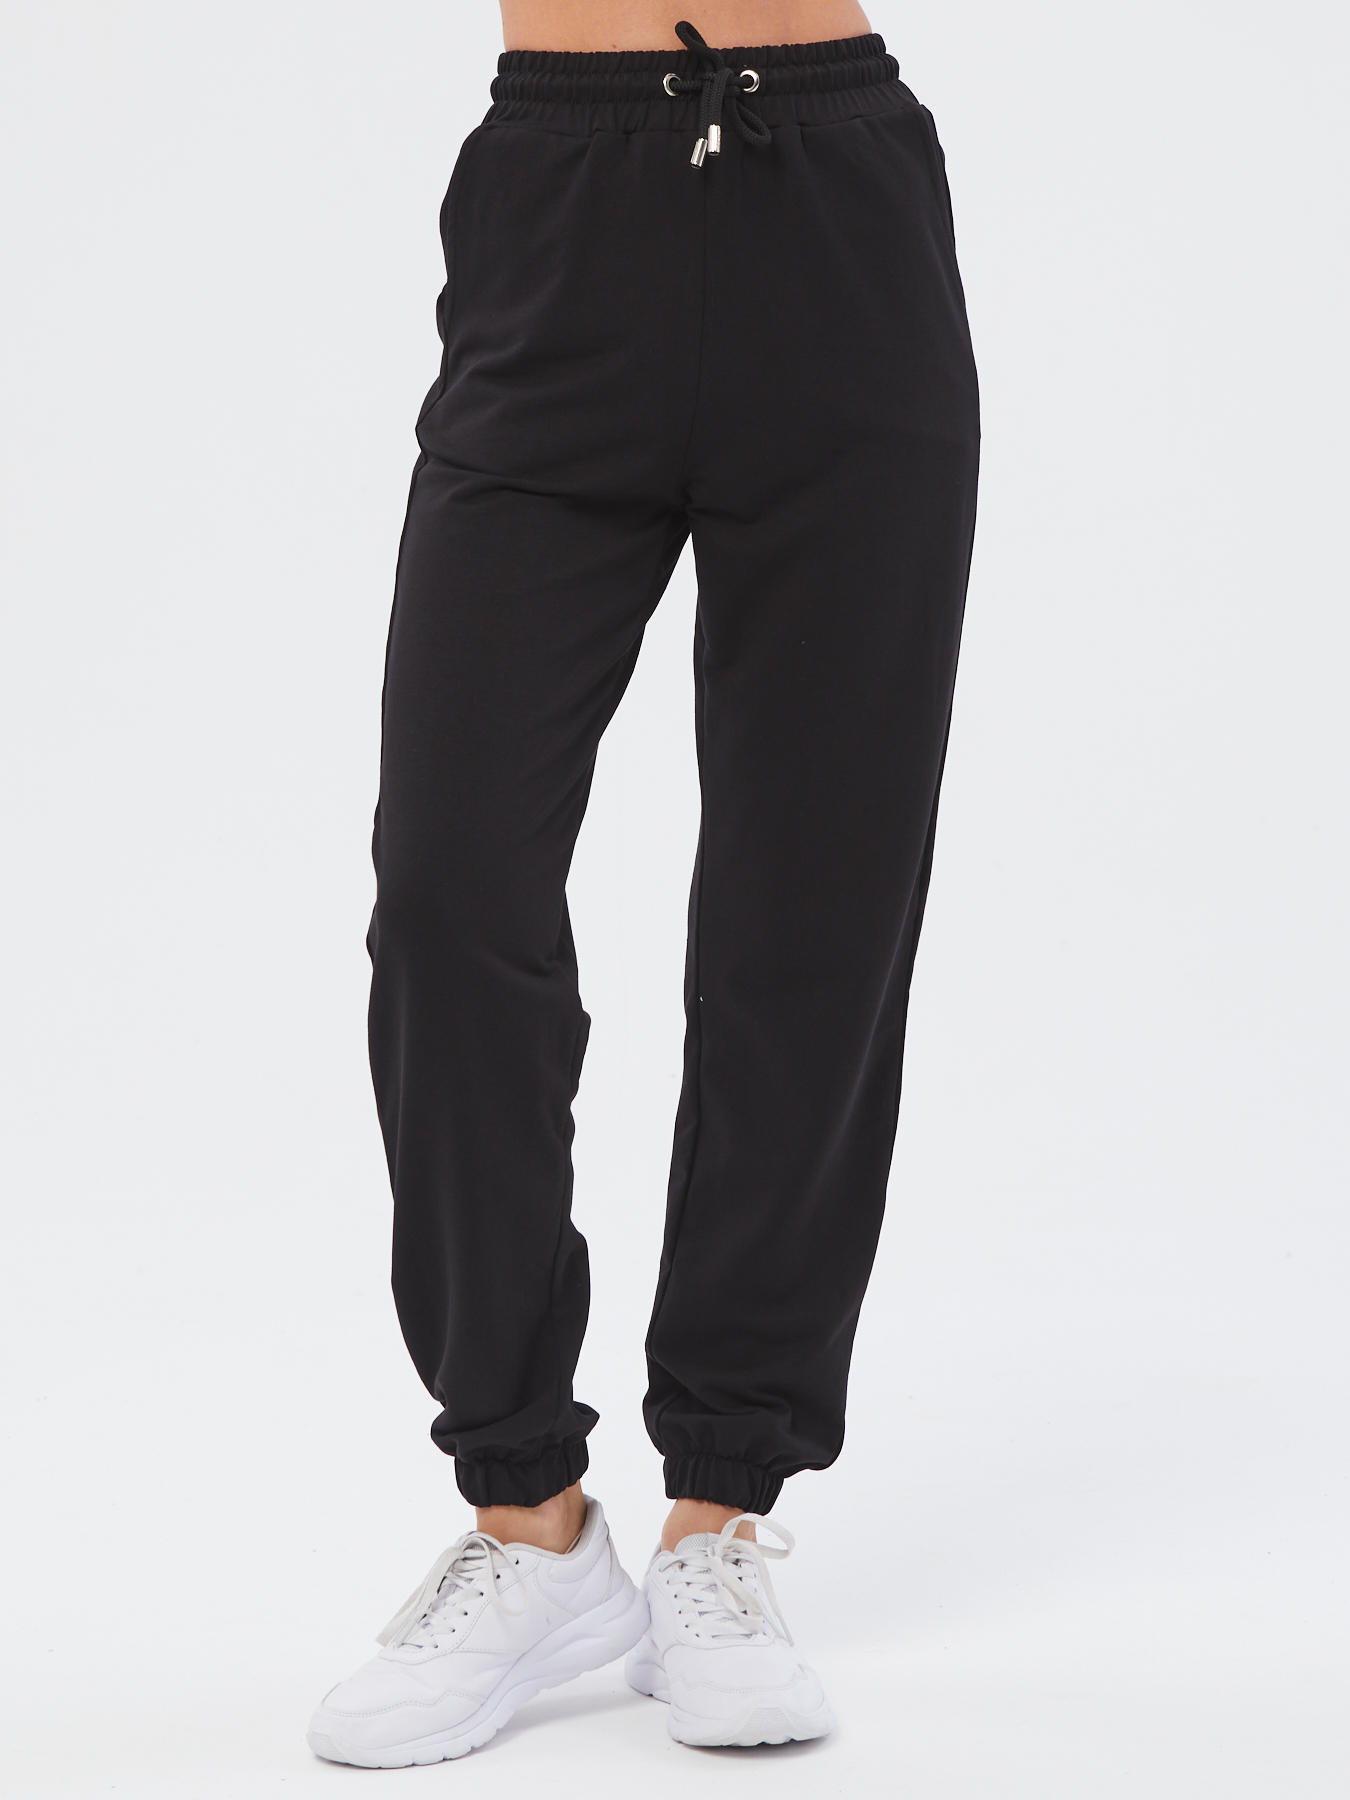 Спортивные брюки женские Still-expert б5 черные 40/150-165